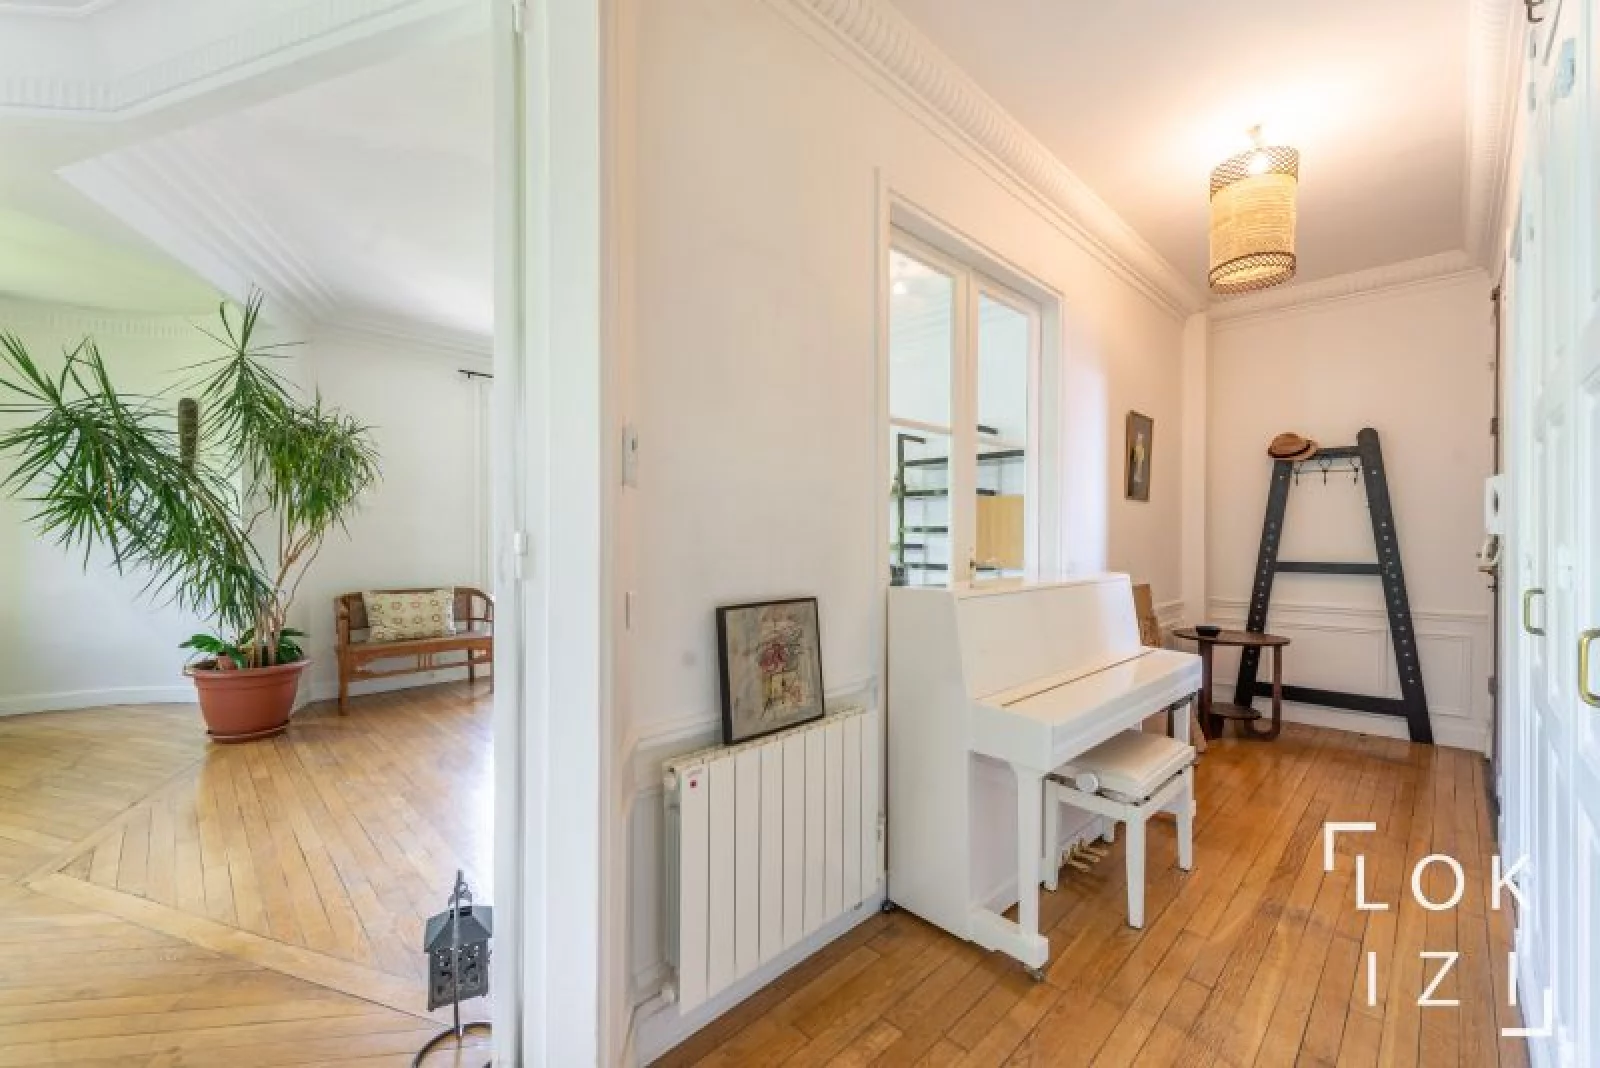 Location appartement meublé 4 pièces 121m² (Paris 18)